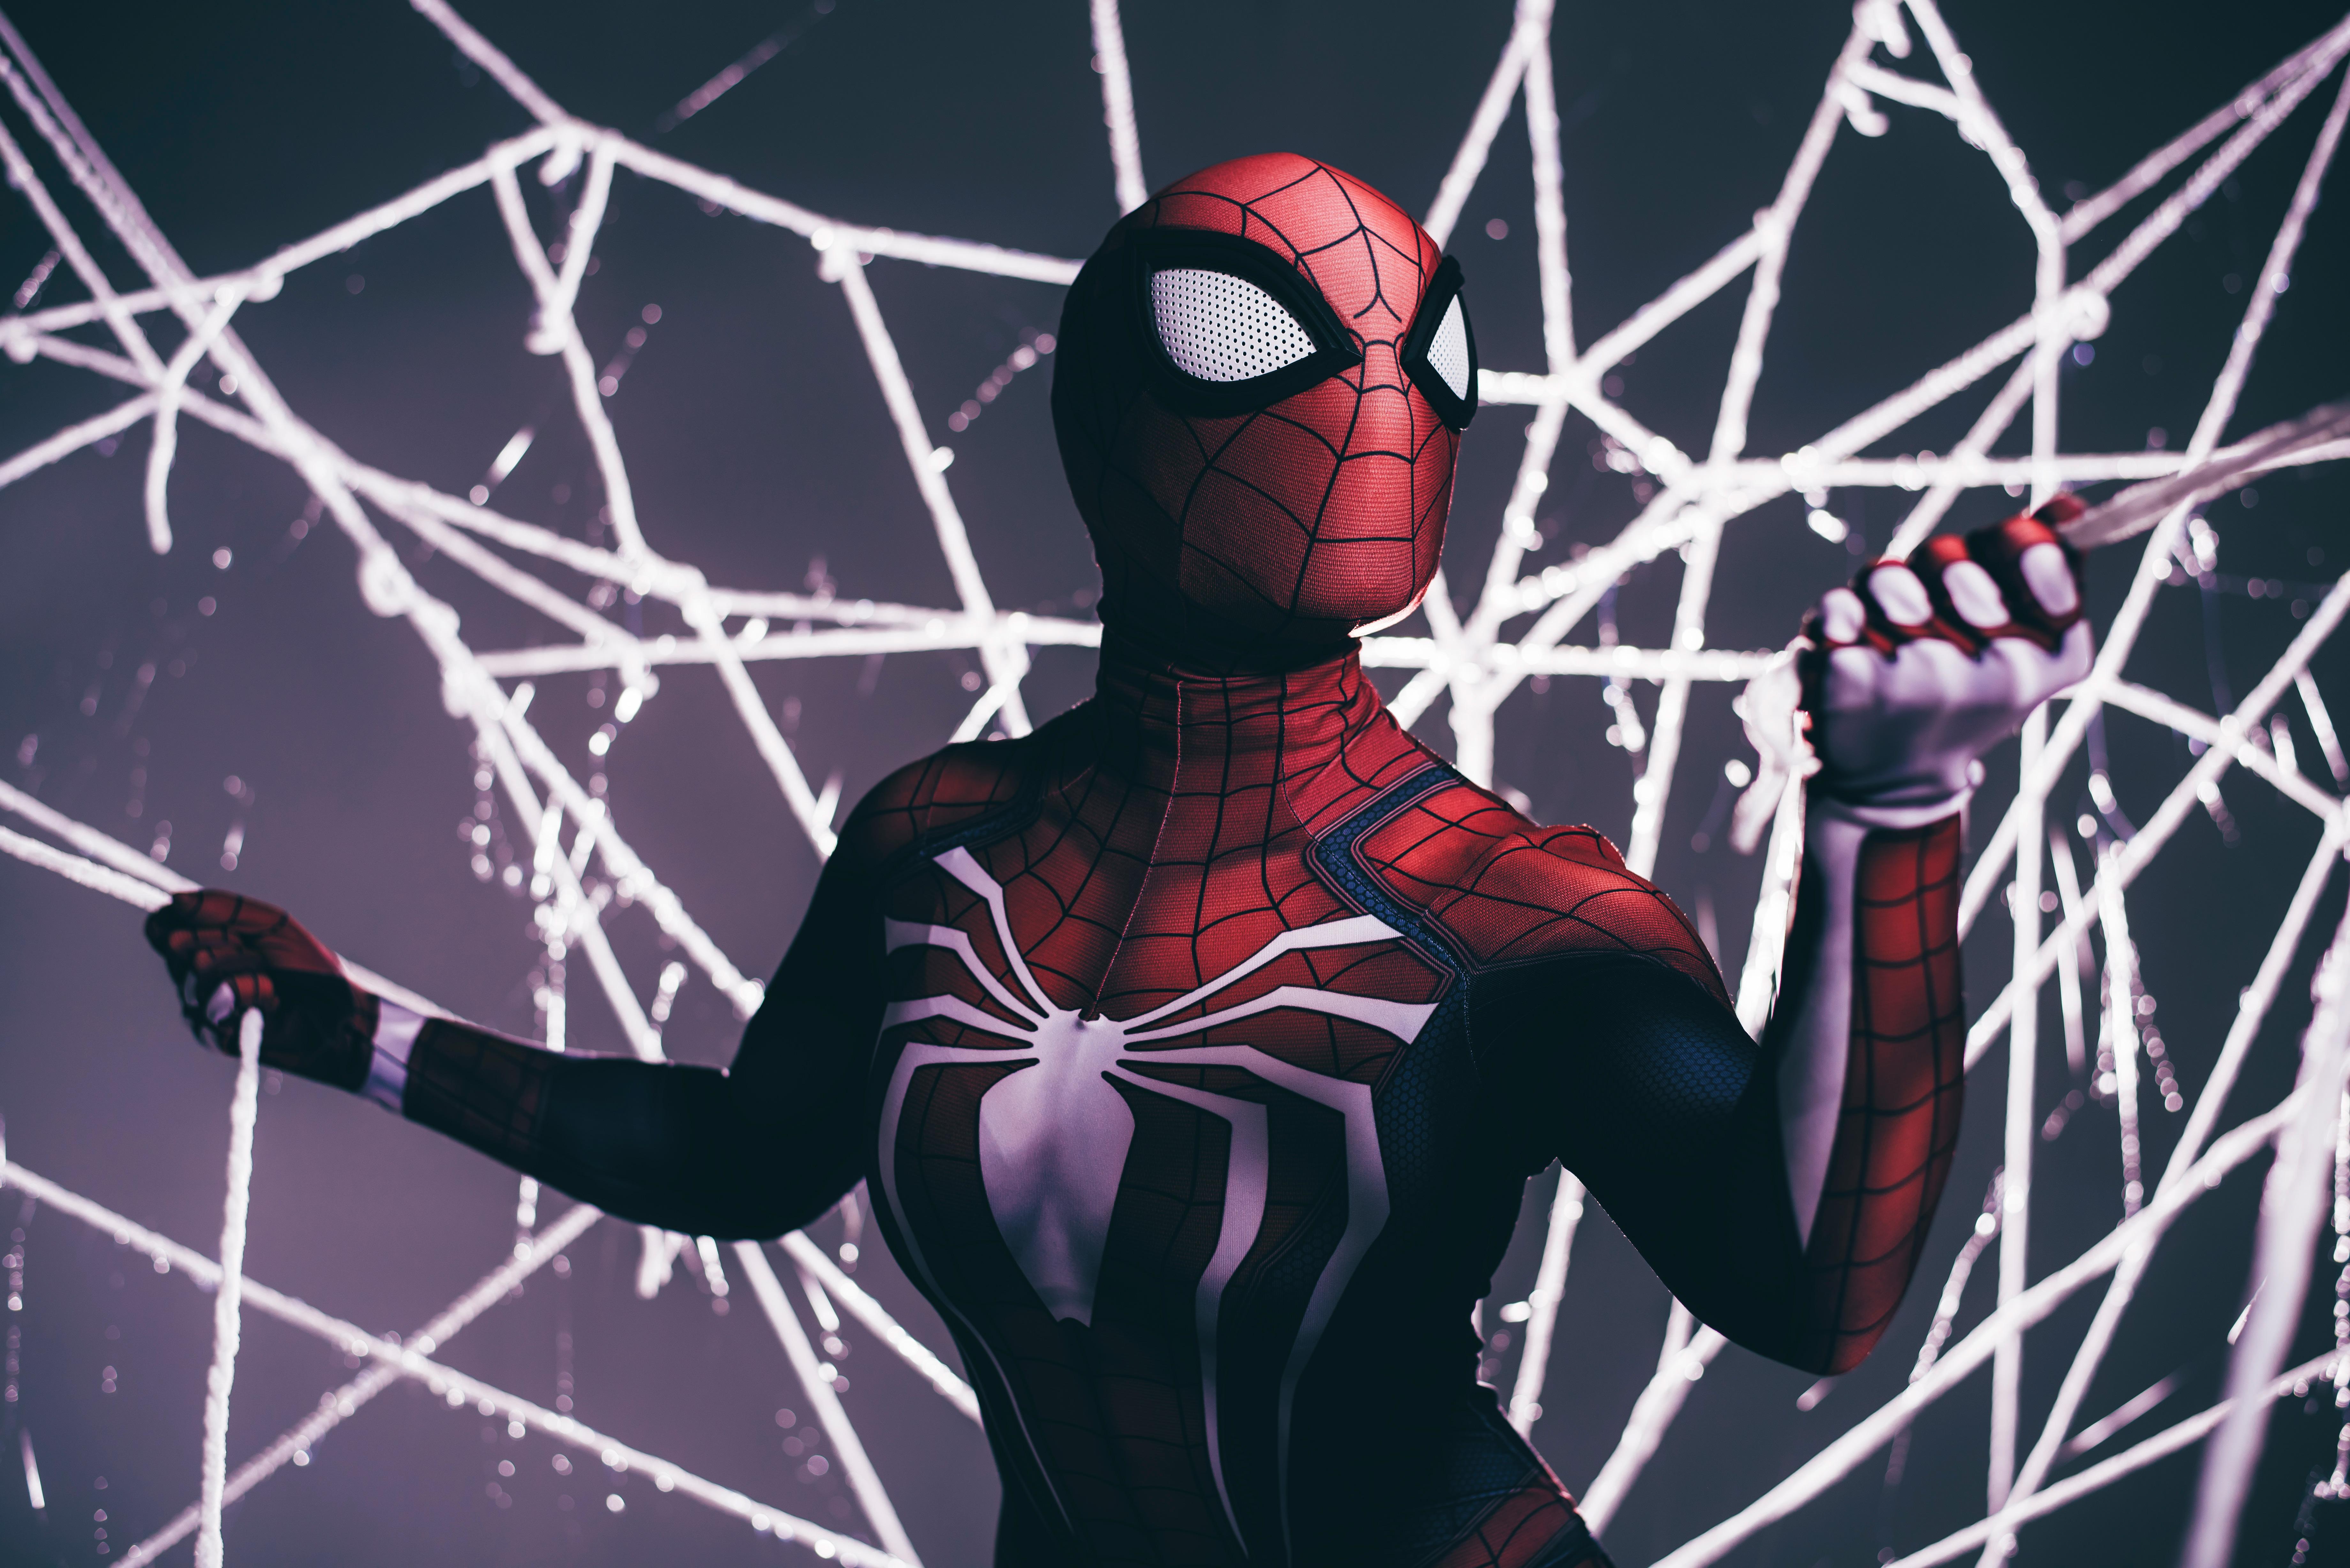 7360 x 4912 · jpeg - Spiderman Shooting Web, HD Superheroes, 4k Wallpapers, Images ...